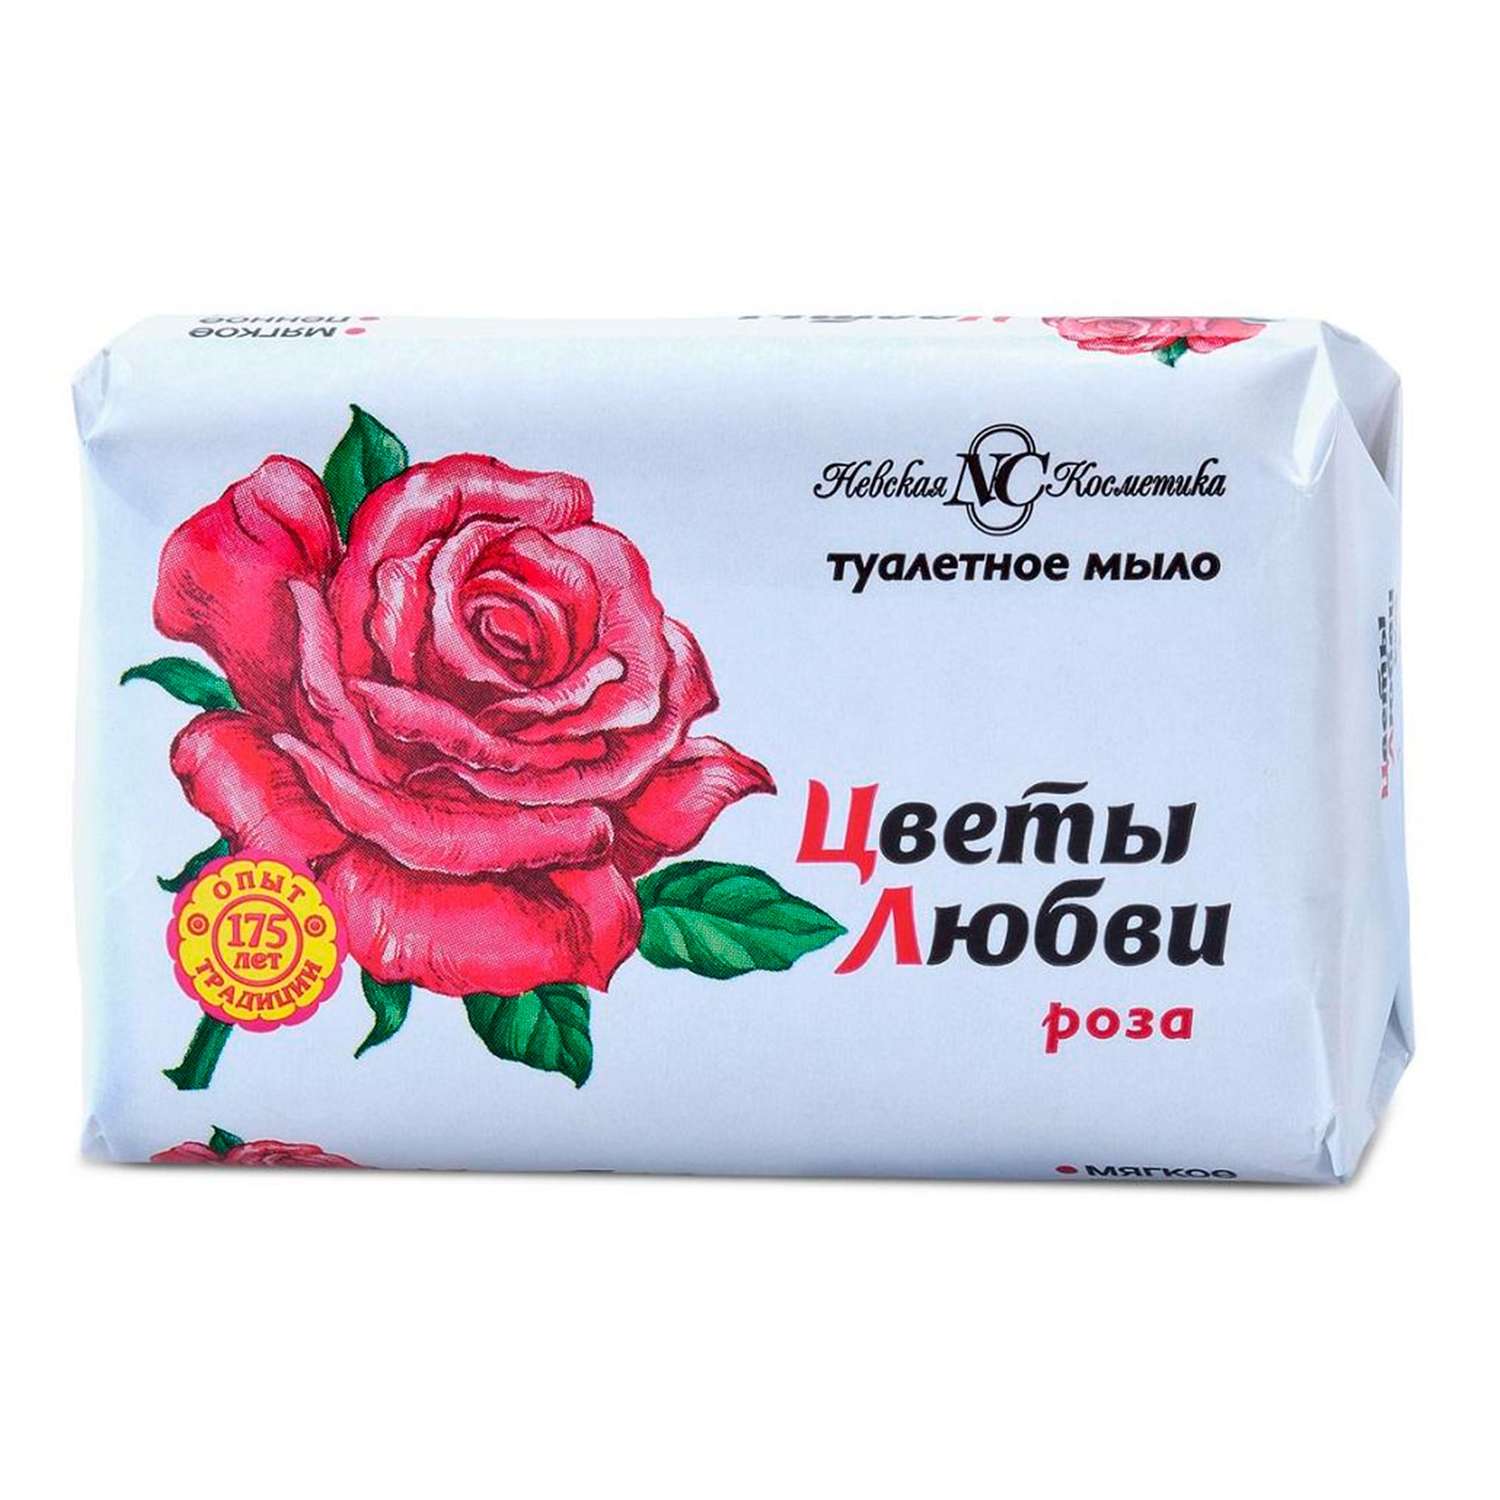 Мыло туалетное НЕВСКАЯ КОСМЕТИКА Цветы любви Роза 90г - фото 1